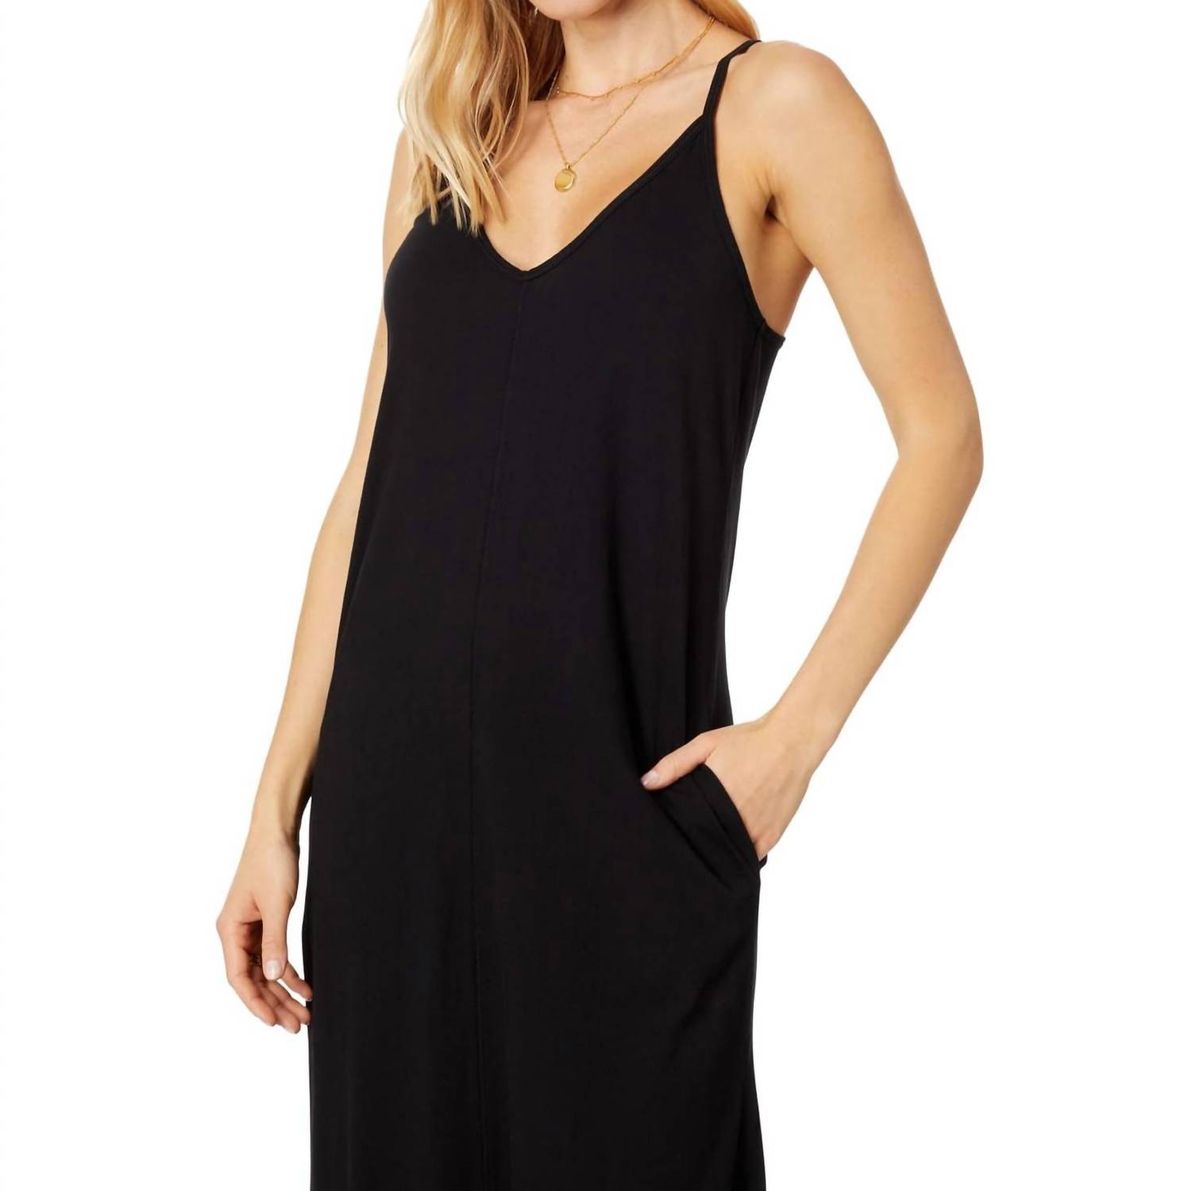 Style 1-1346069956-3471 bobi Size S Plunge Black Side Slit Dress on Queenly